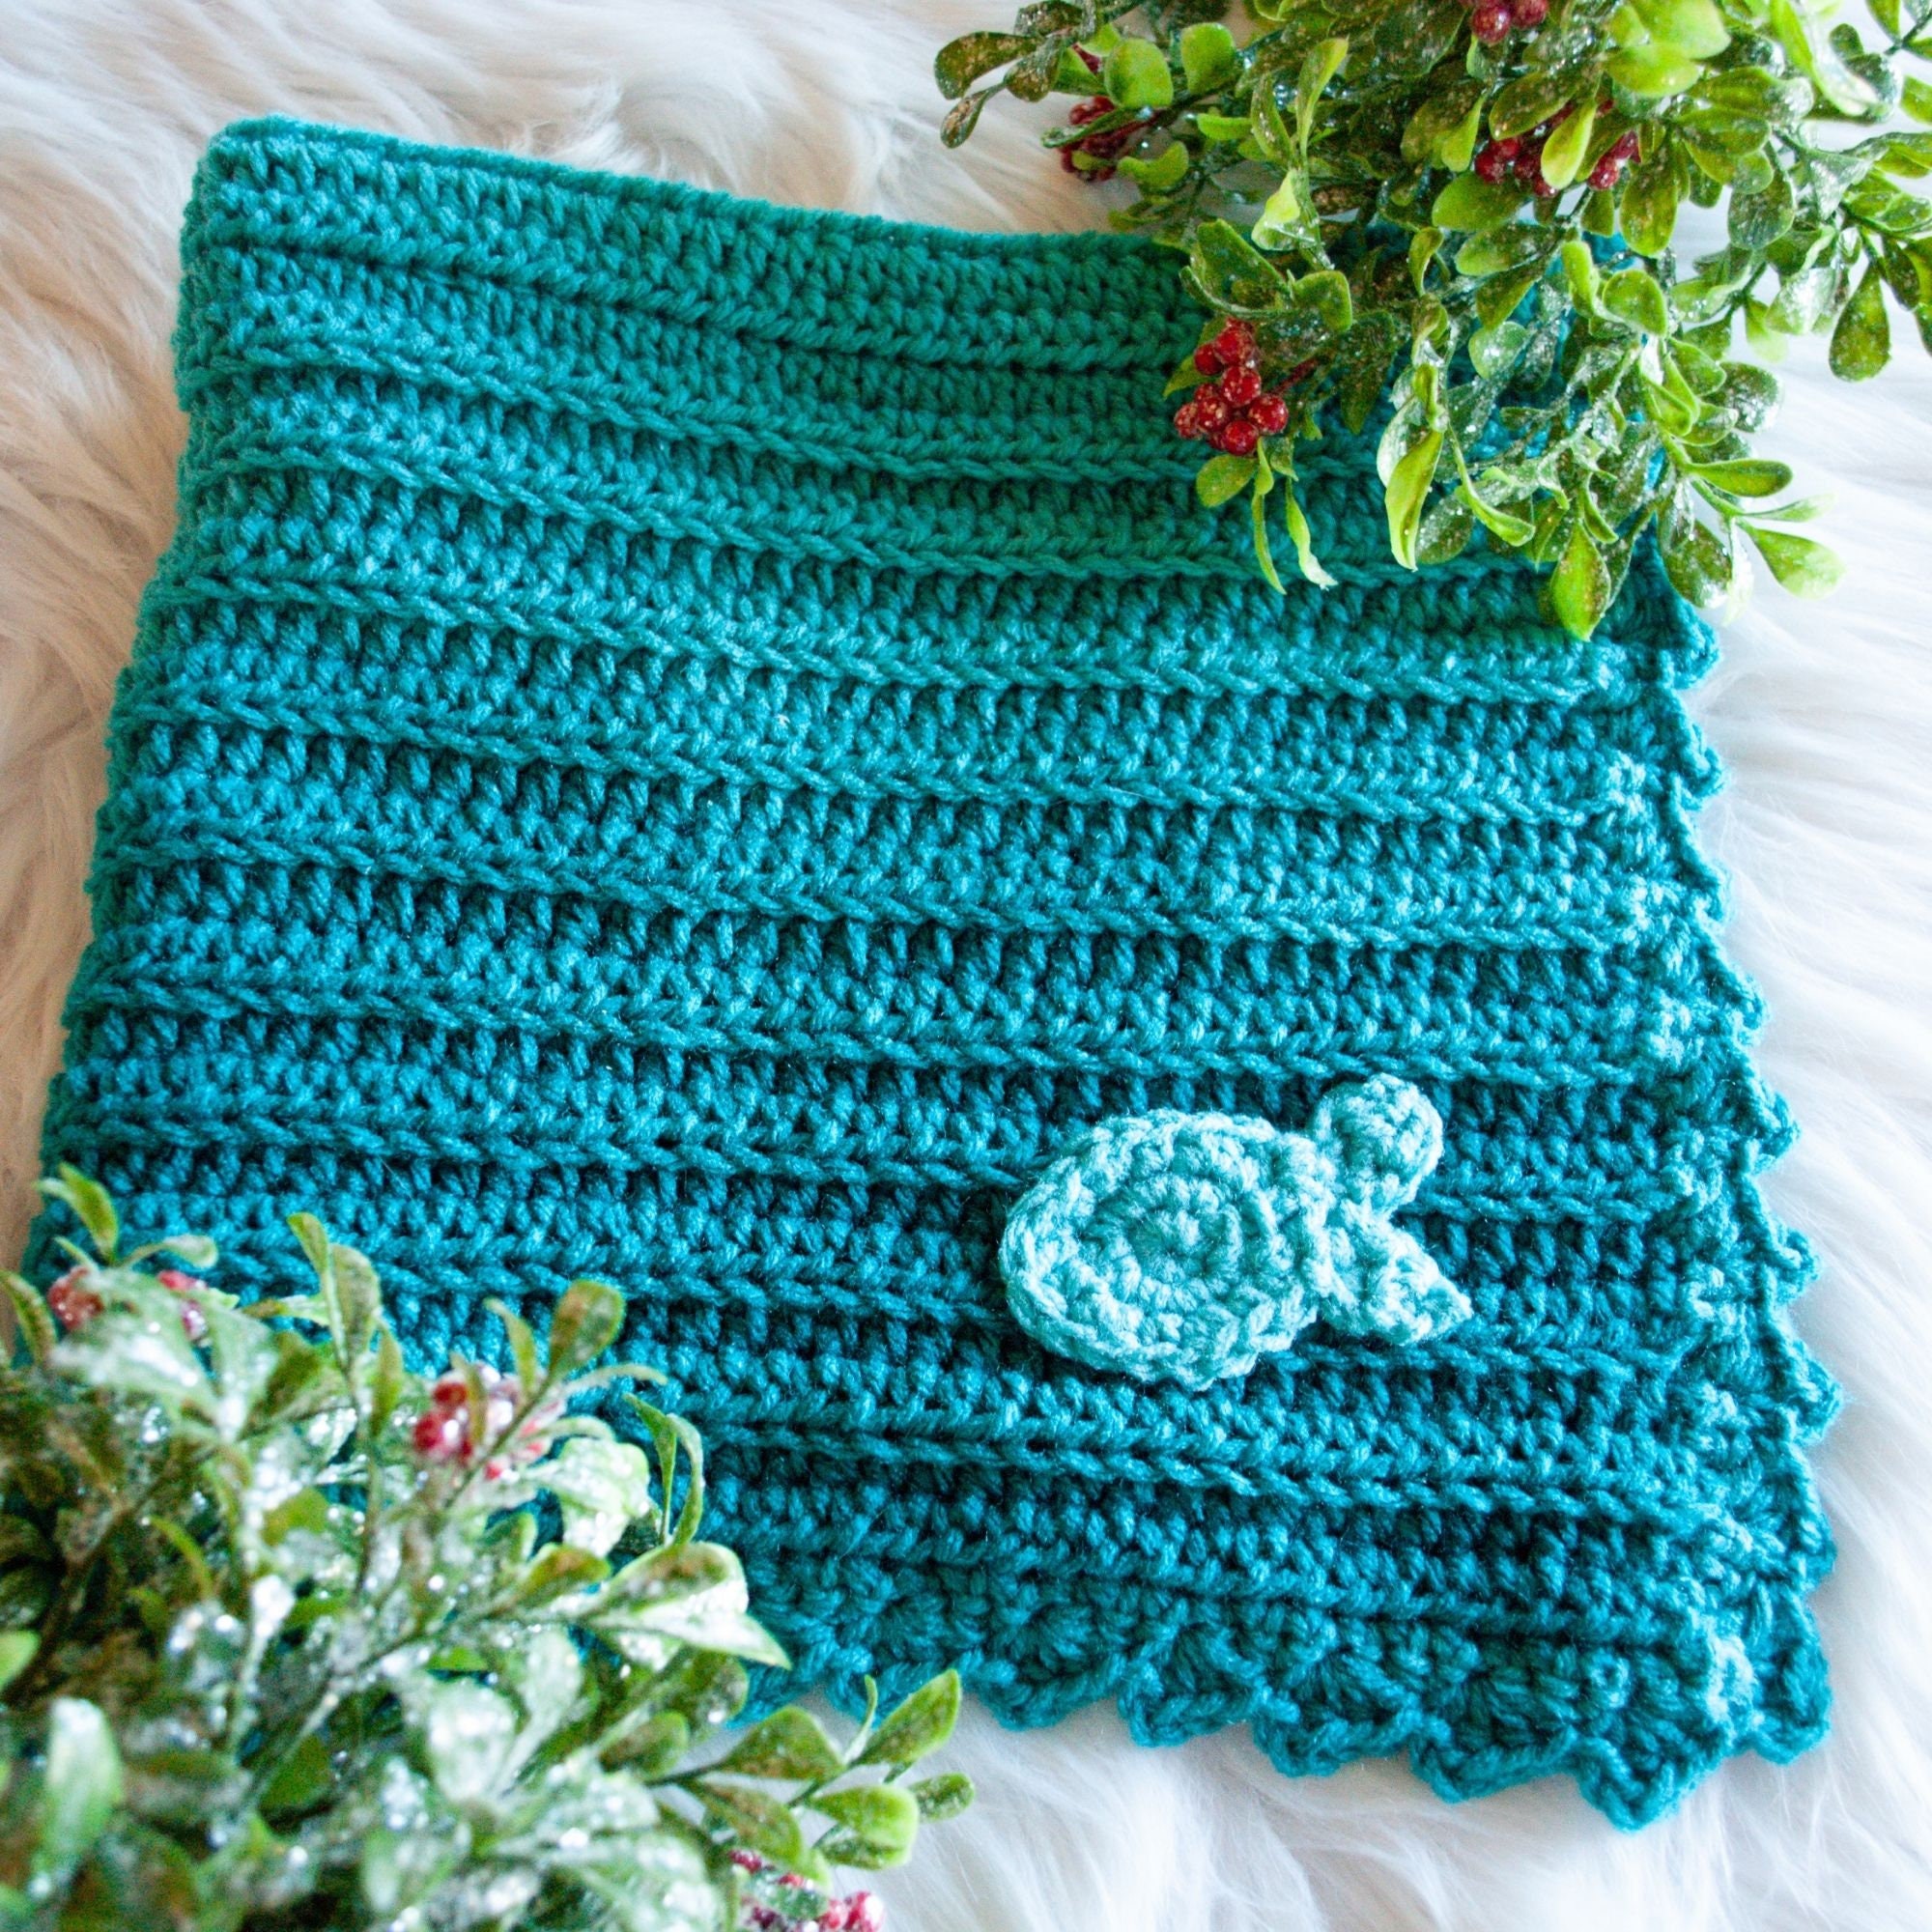 My Hobby Is Crochet: Fabian's Ombré Baby Blanket - Free Crochet